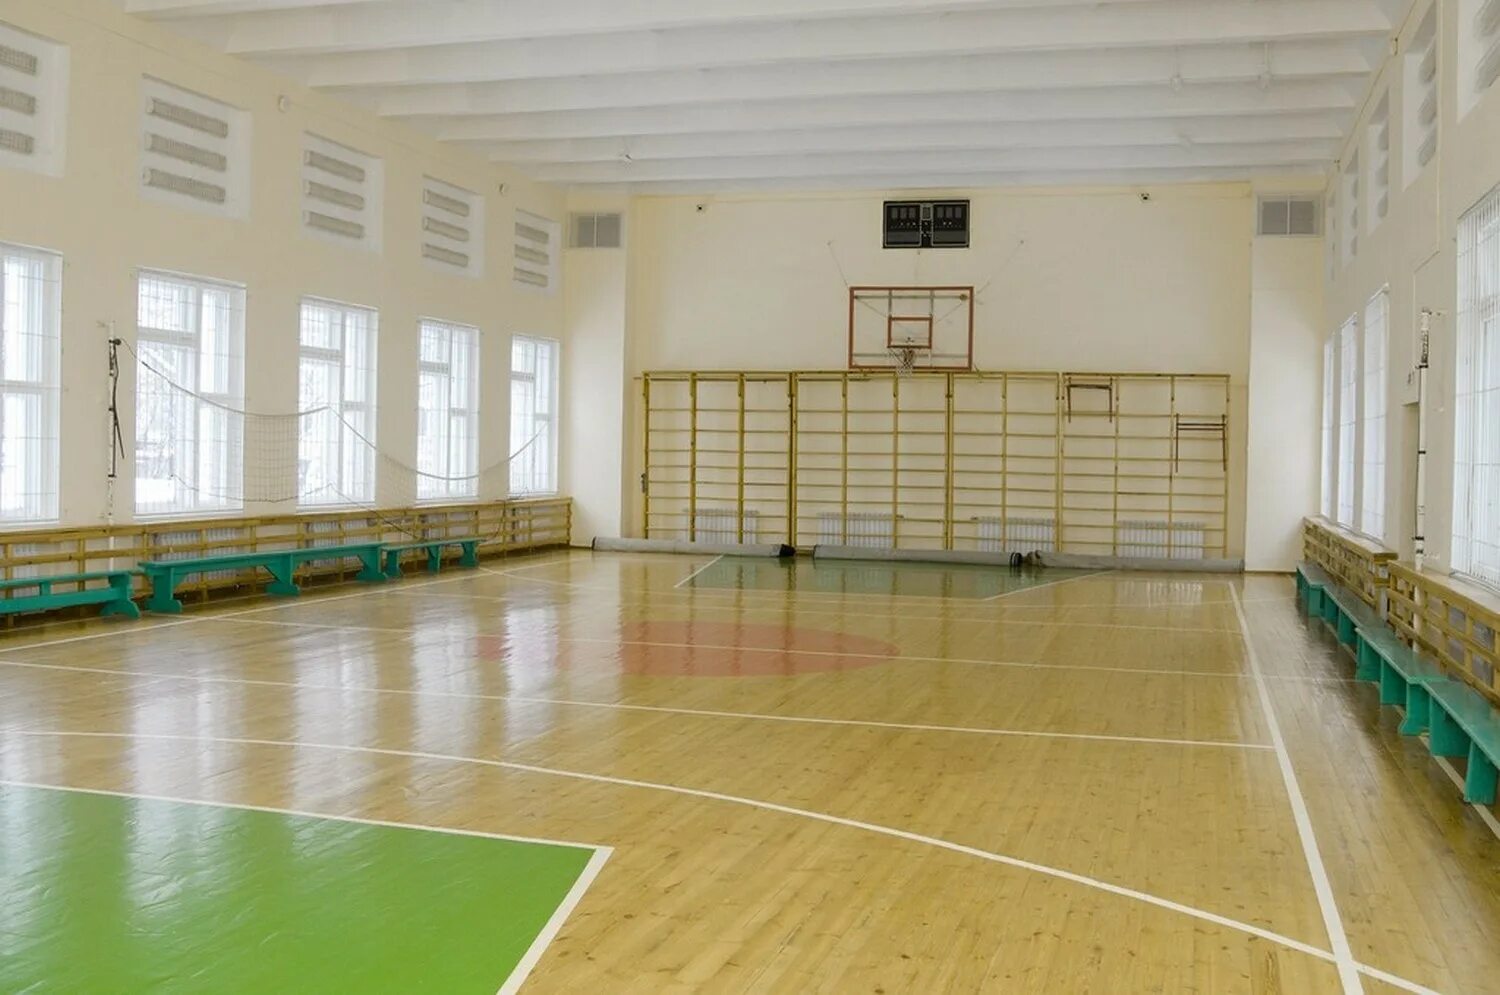 Спорт в большой зал. Спортивный зал. Школьный спортзал. Спортивный зал в школе. Современный спортзал в школе.